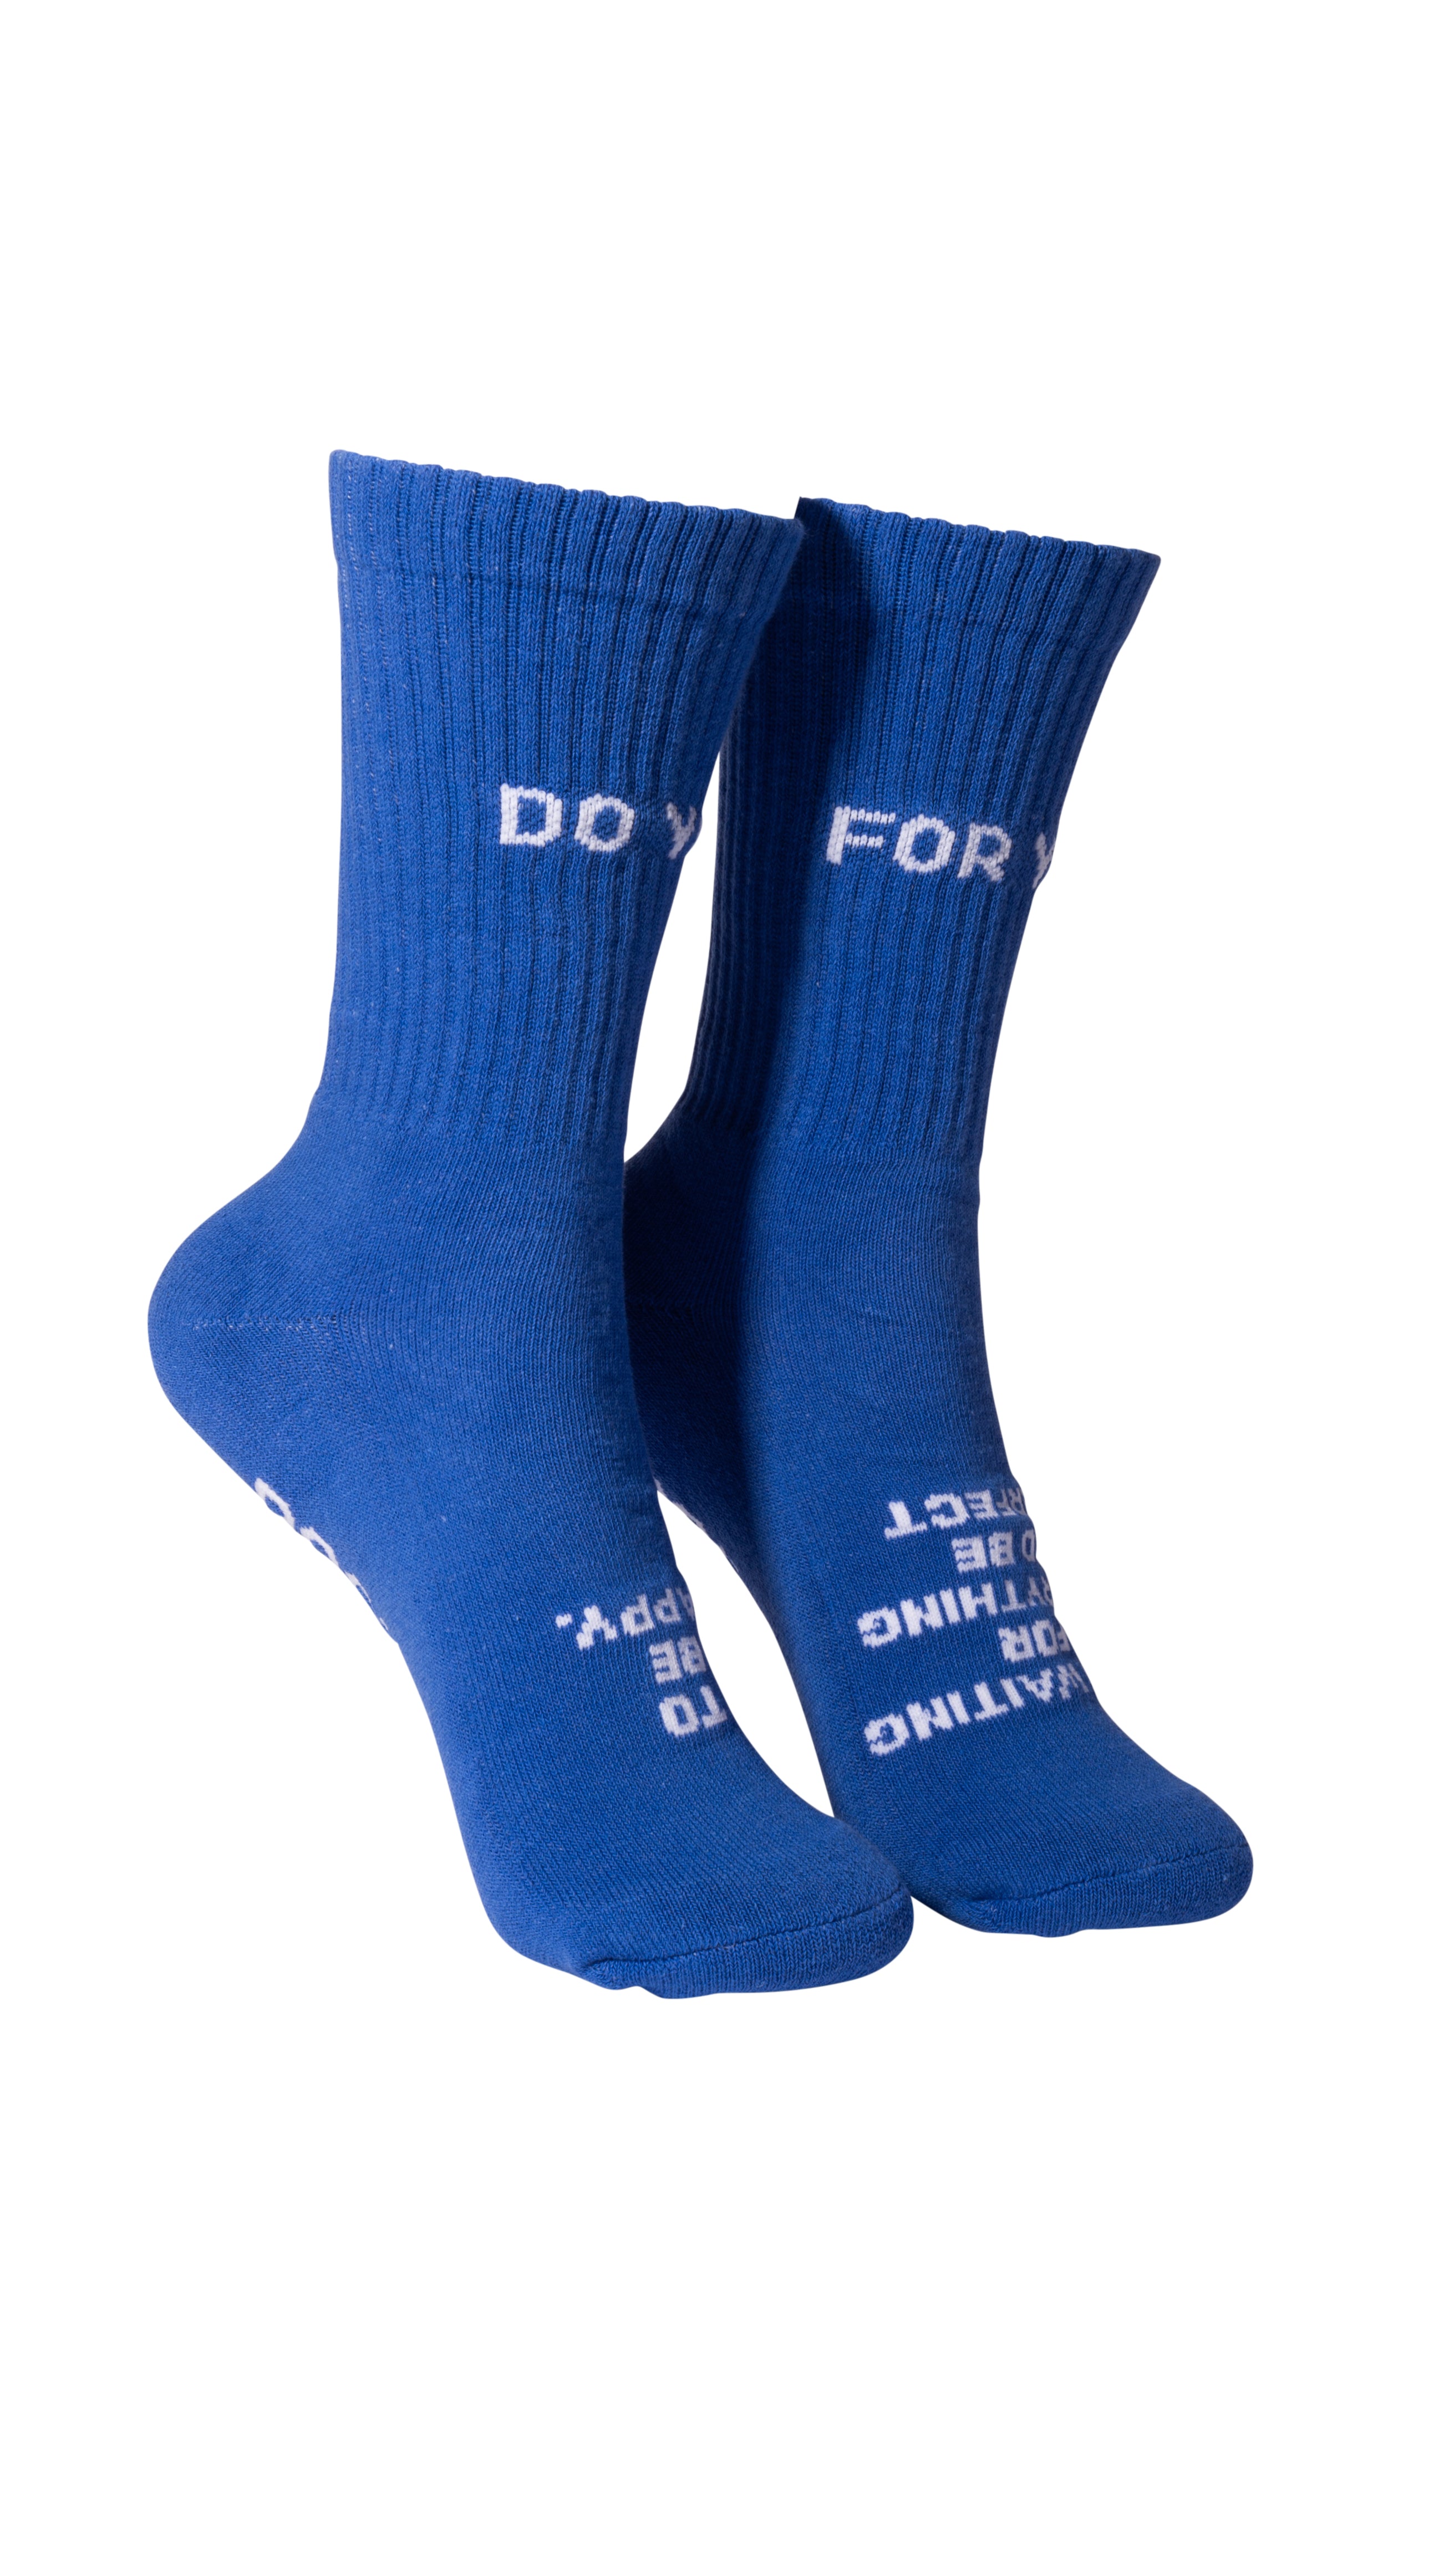 FOR YOU Women's Crew Socks - Blue